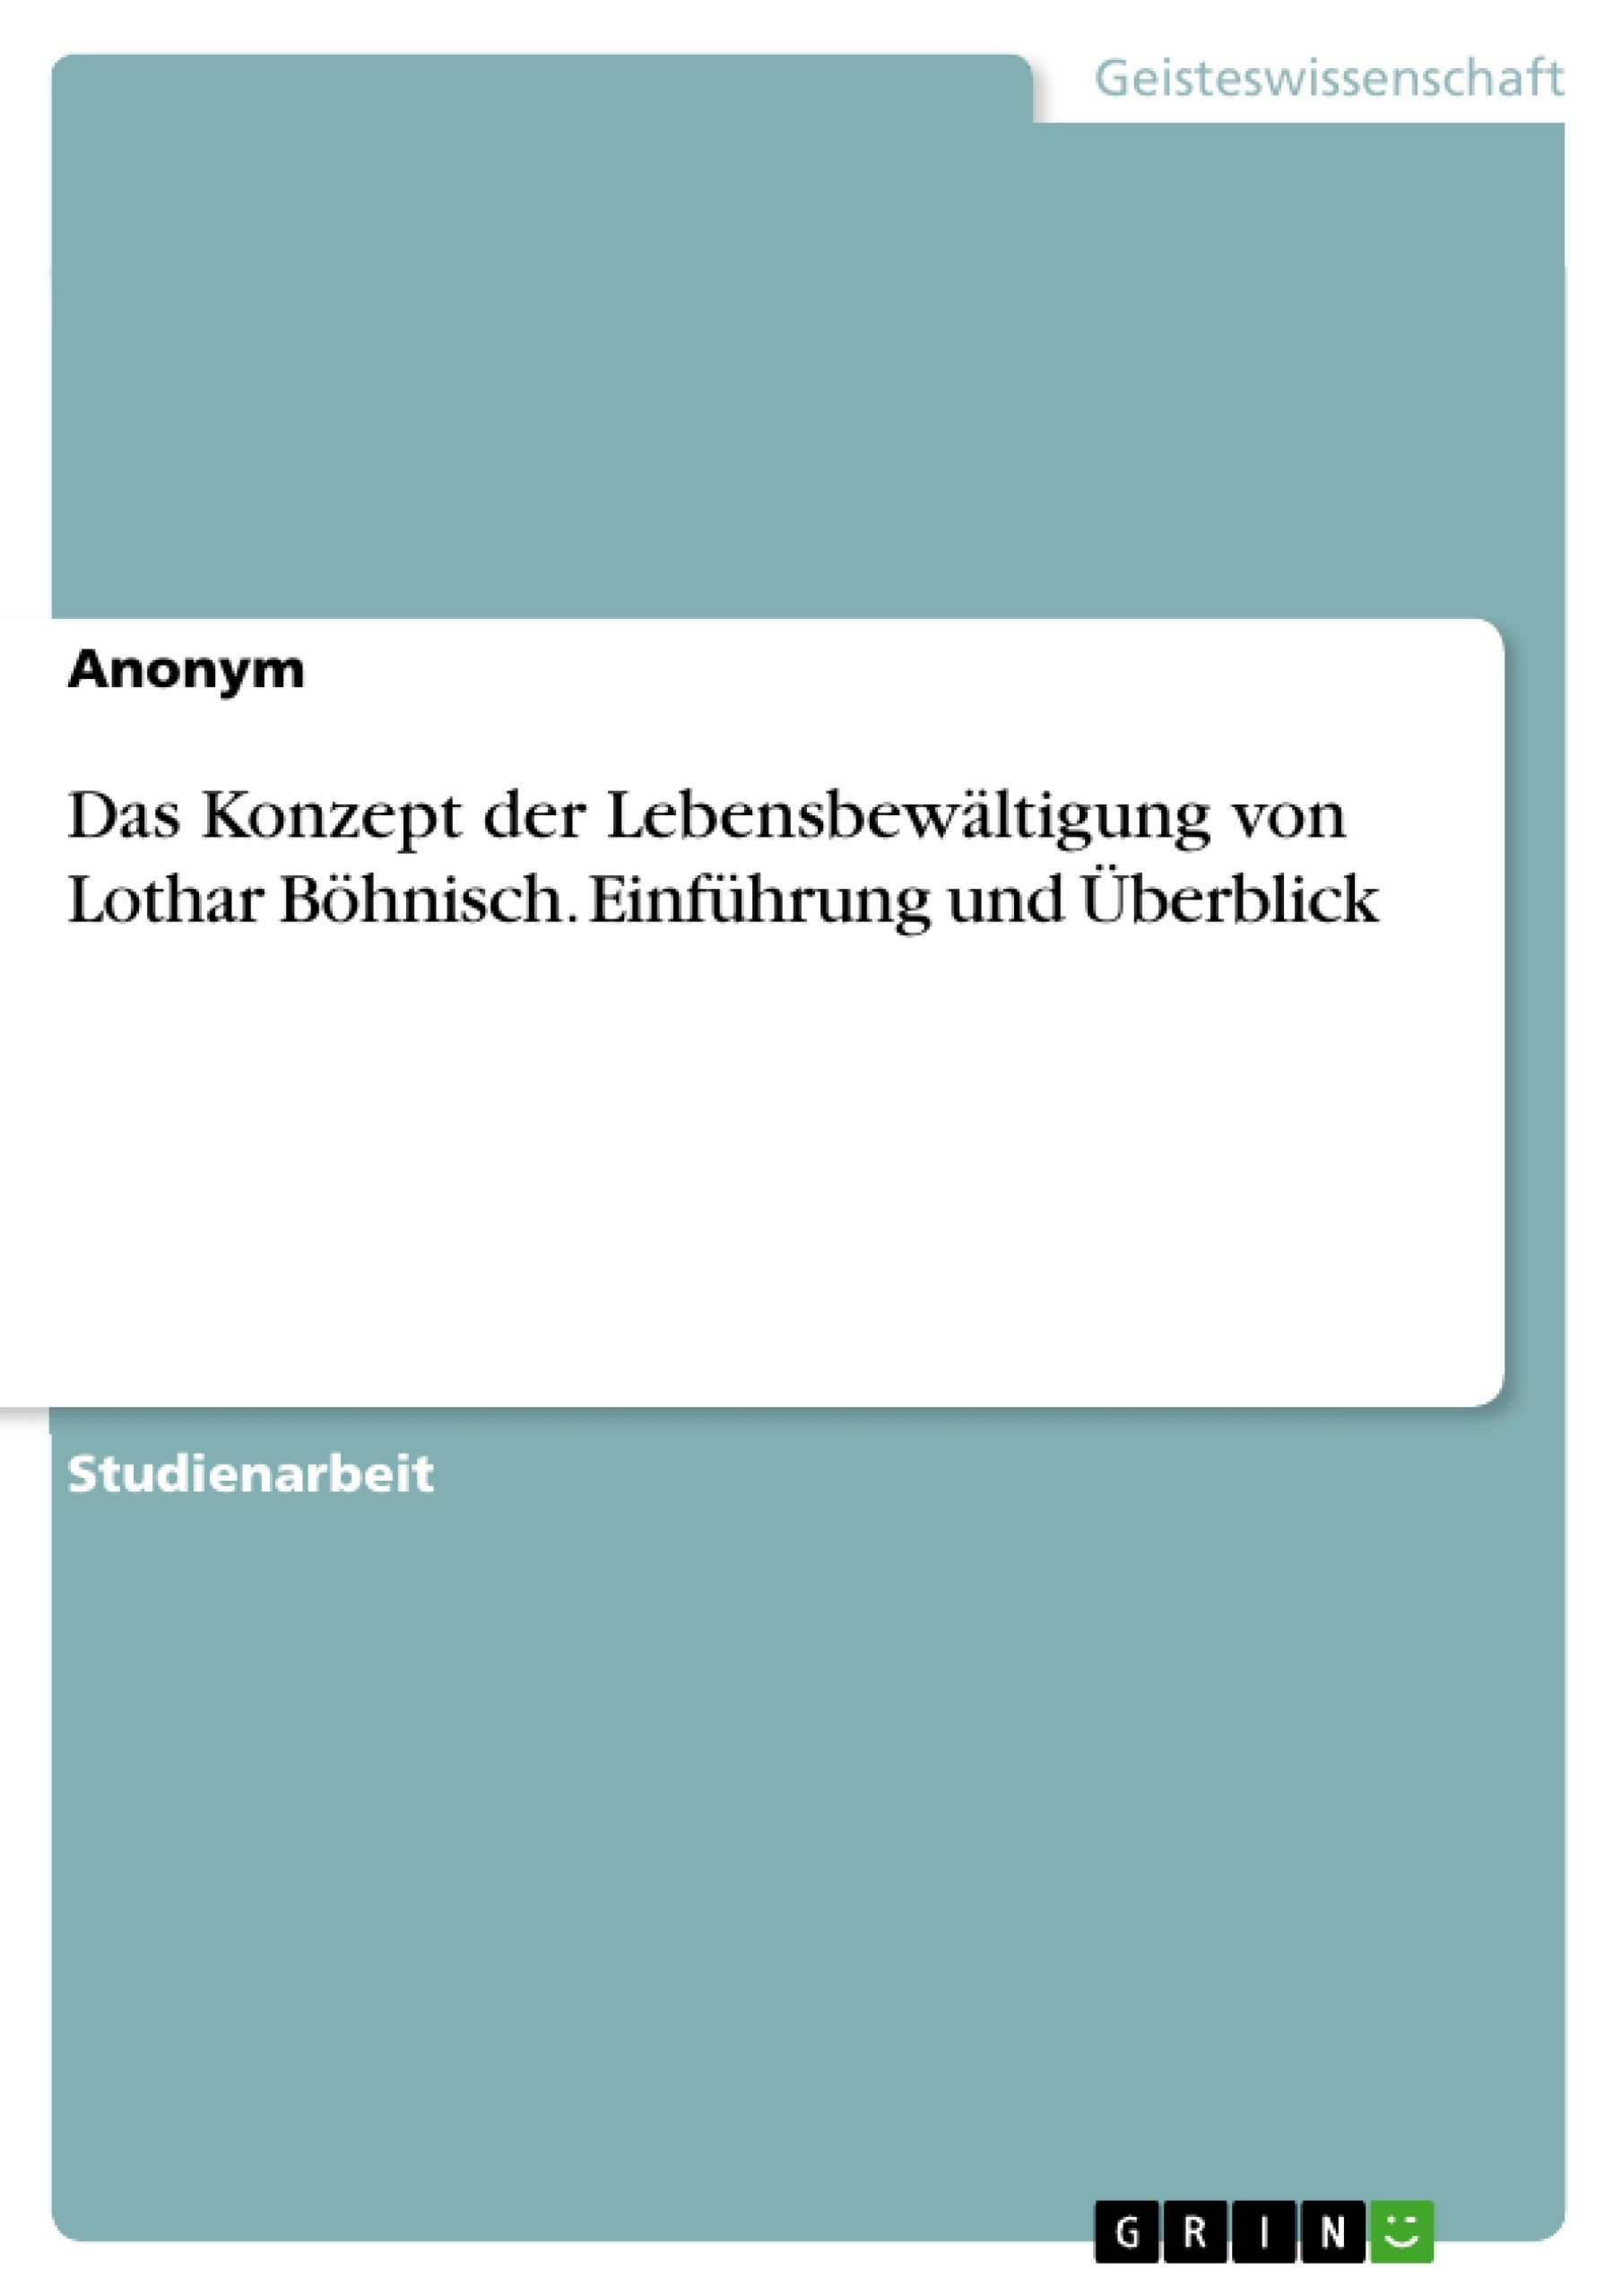 Title: Das Konzept der Lebensbewältigung von Lothar Böhnisch. Einführung und Überblick